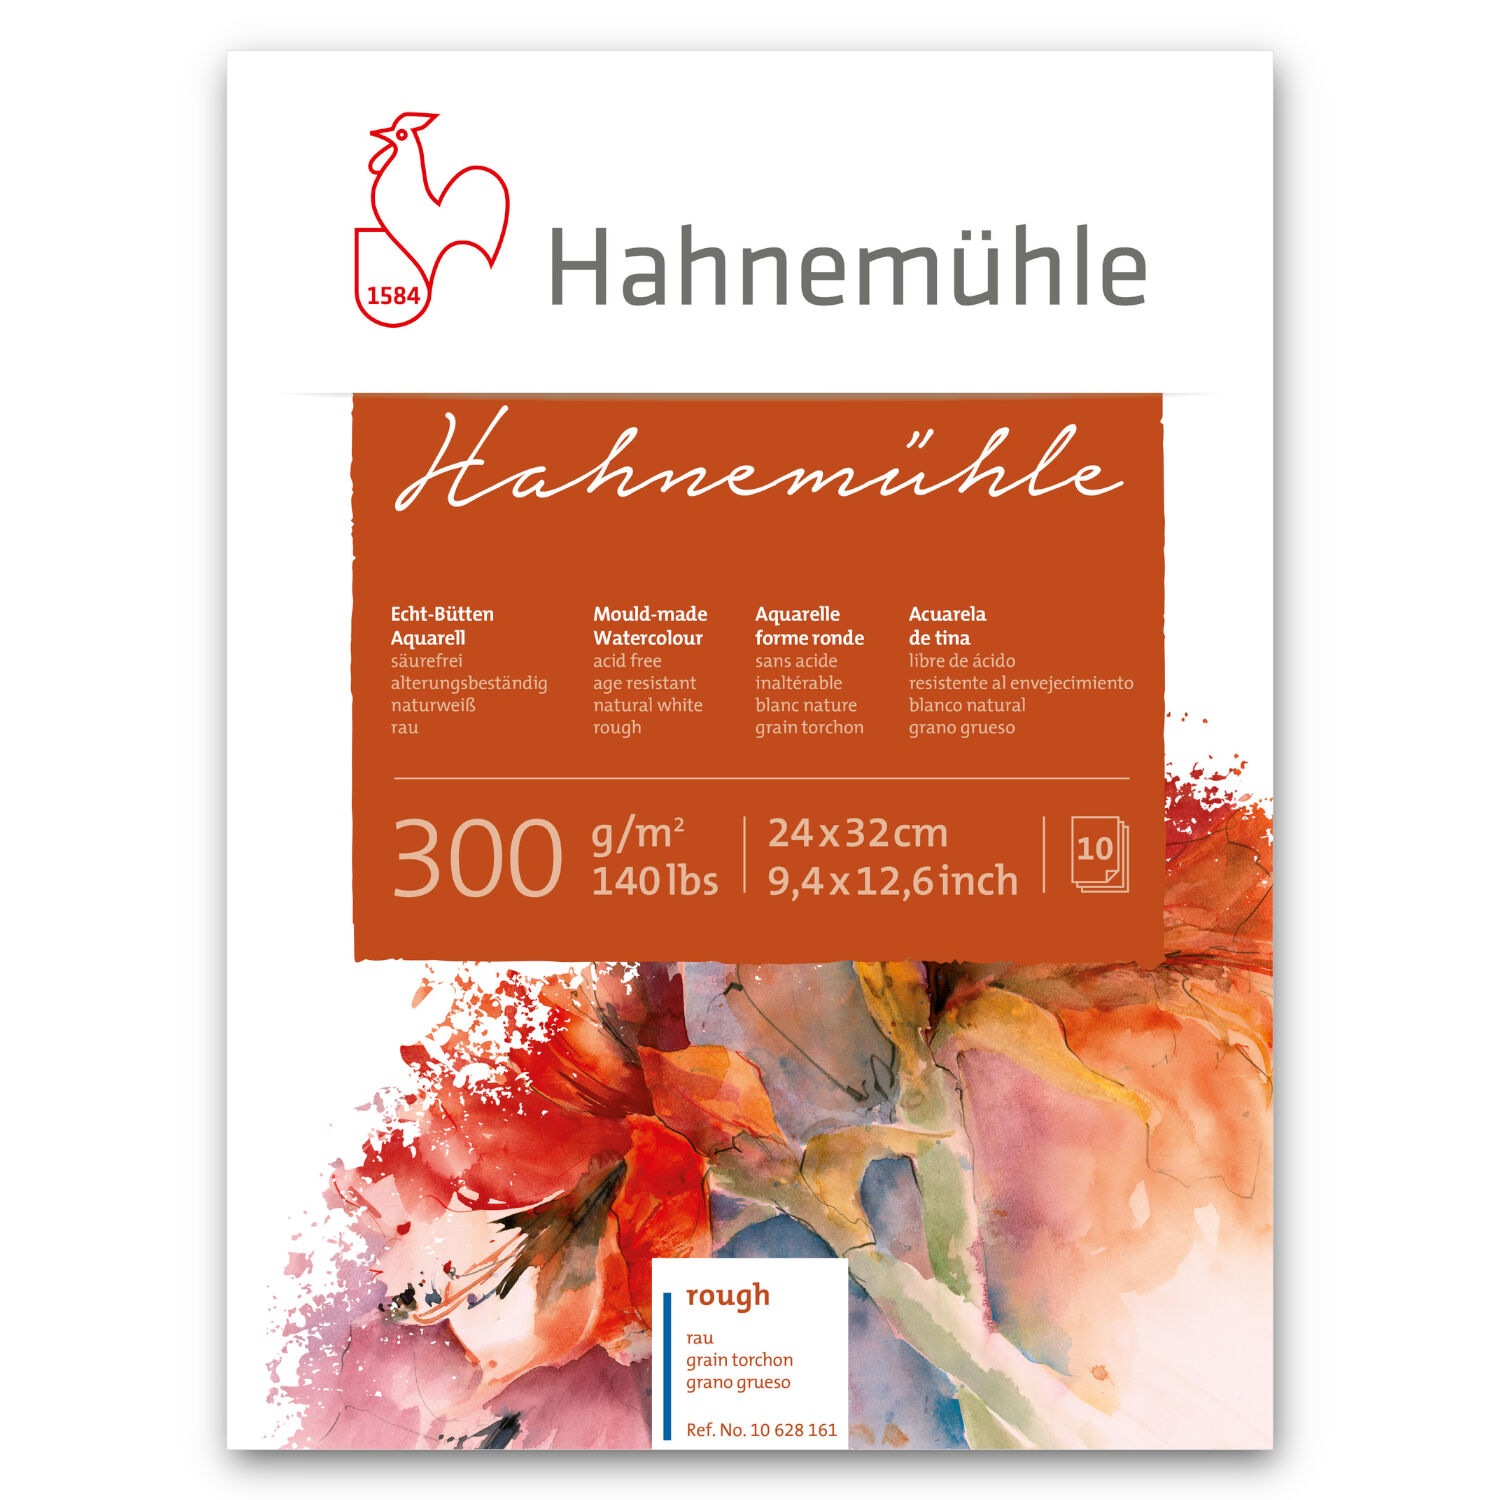 NEU Aquarellblock Hahnemhle rau, 300g/m, 24 x 32cm, 10 Blatt